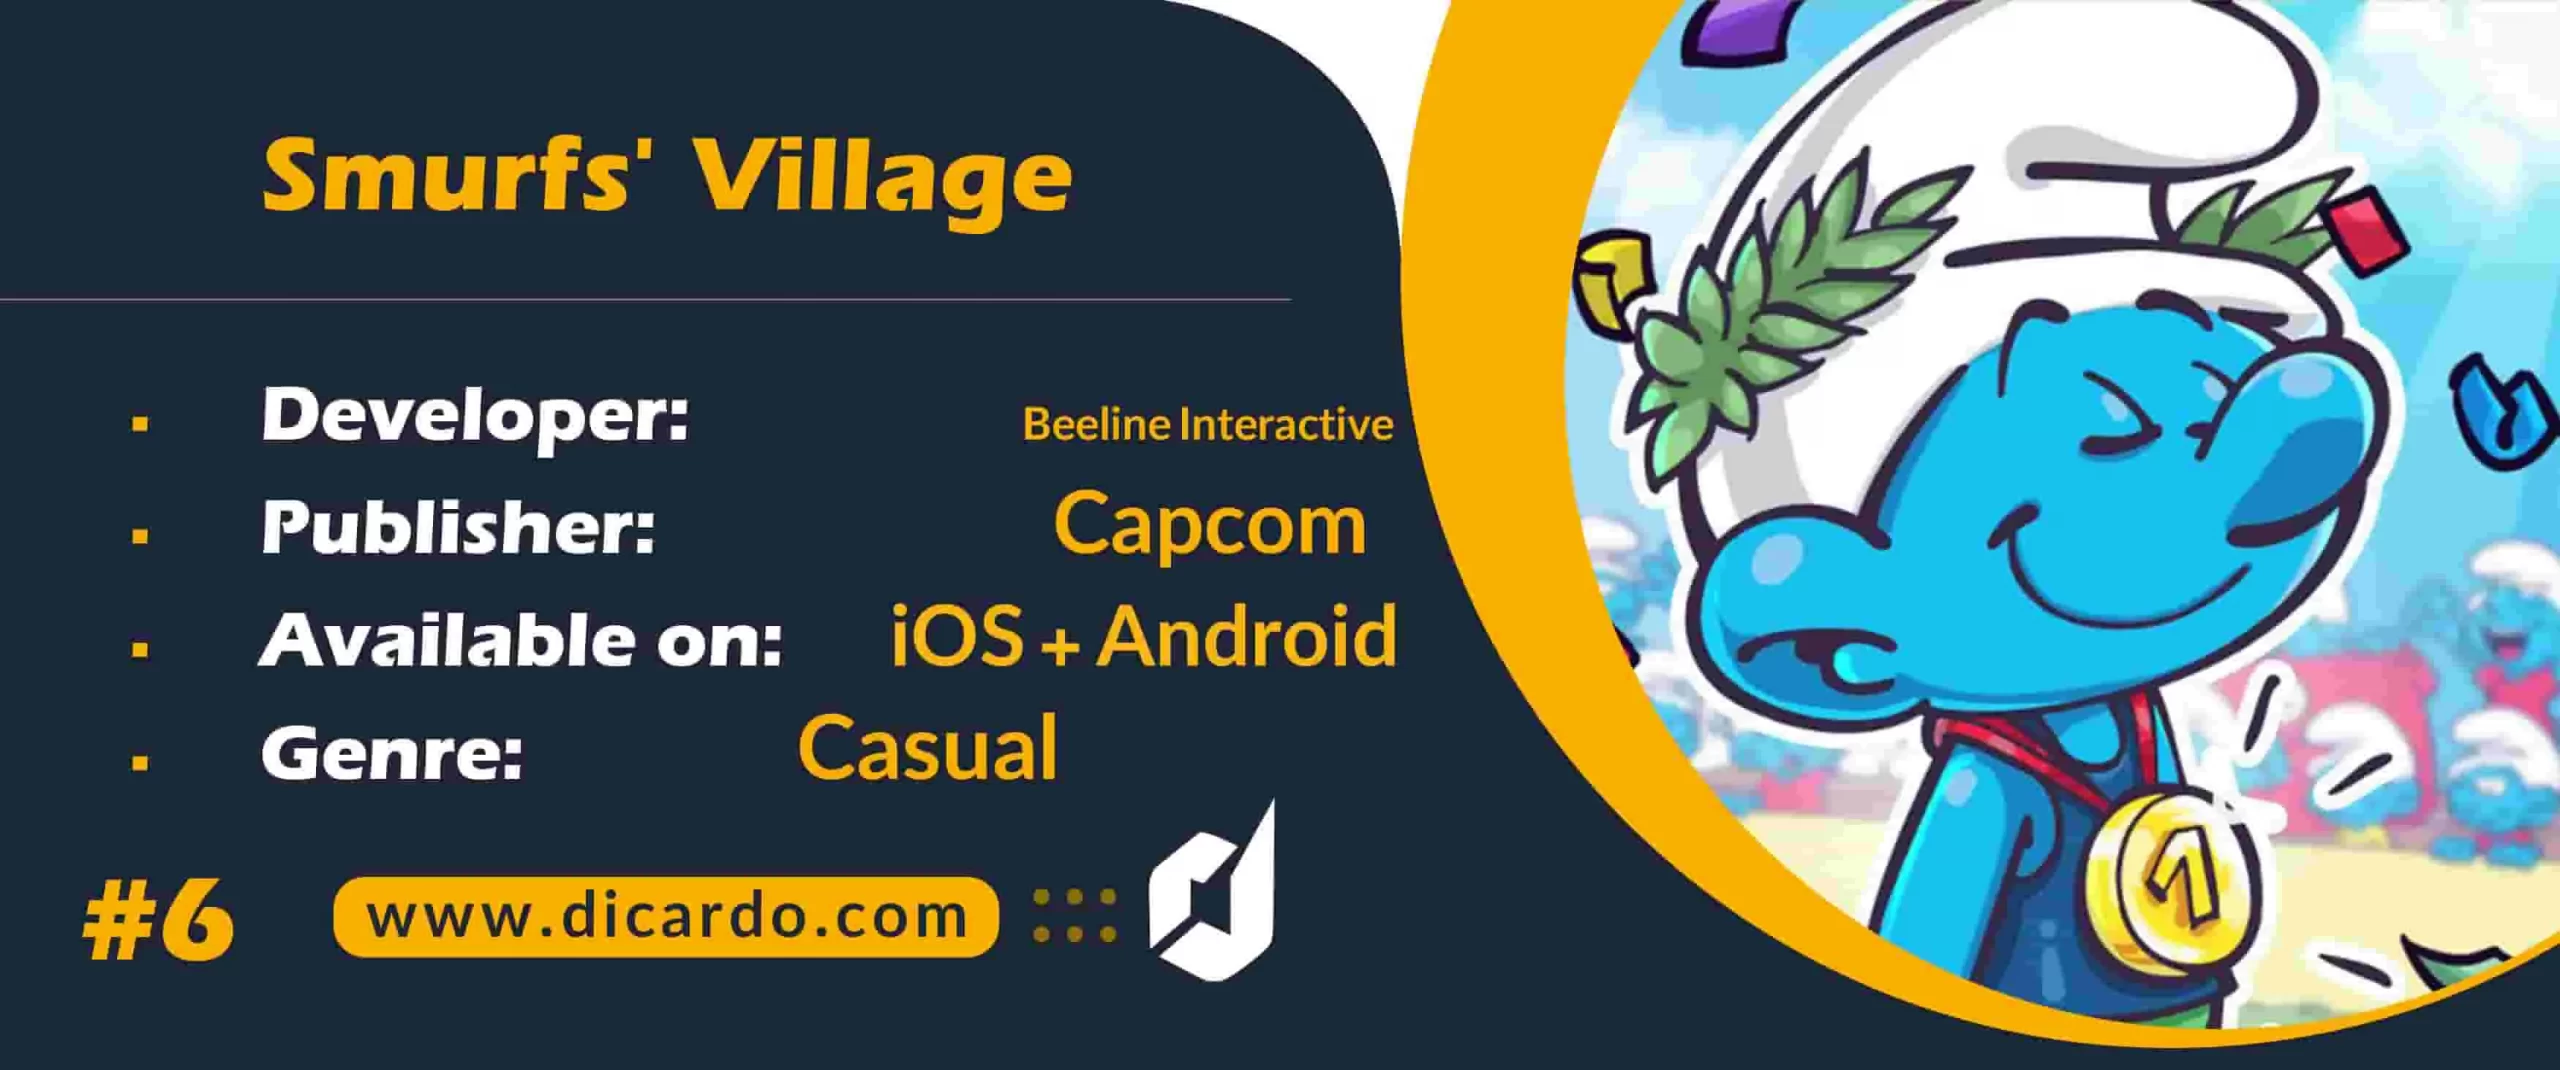 #6 اسمورفز ویلیج Smurfs’ Village از بهترین بازیهای مزرعه داری برای iOS